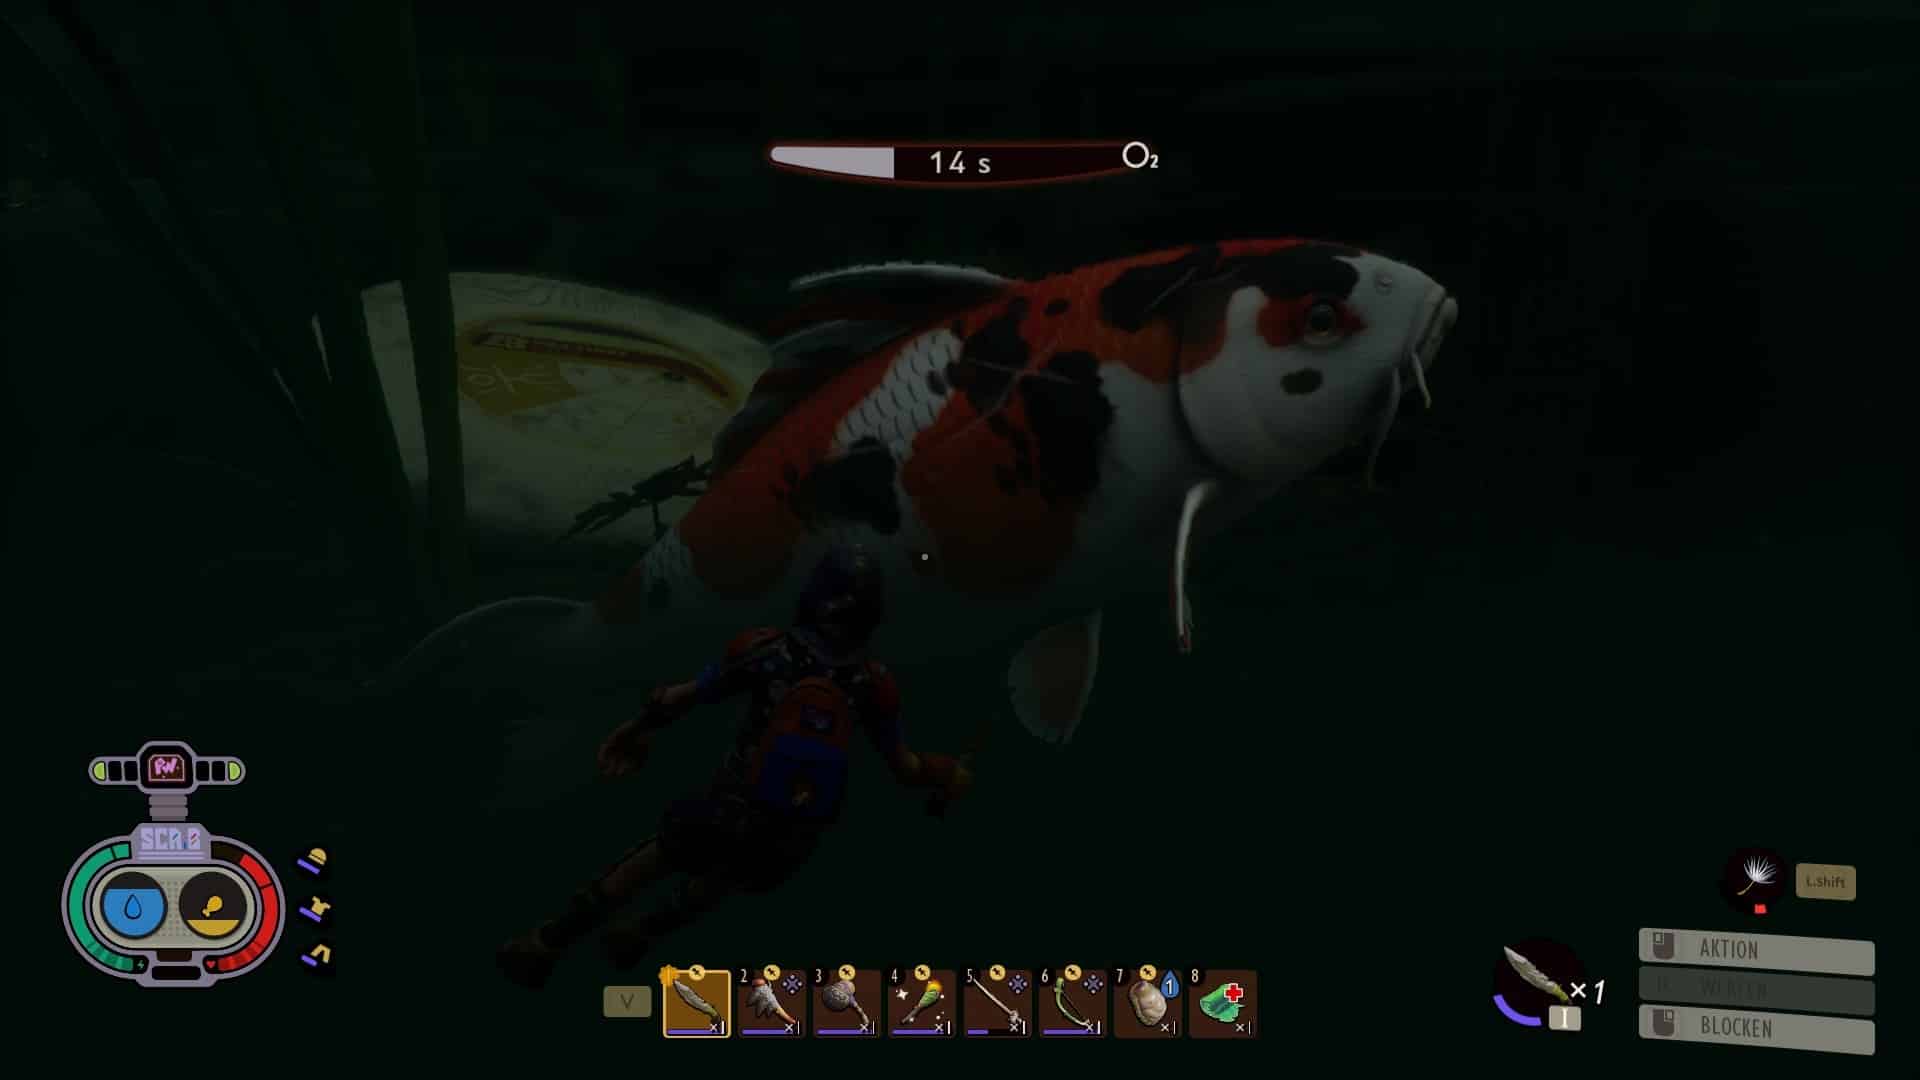 (Esta carpa koi es demasiado grande para nosotros y nuestra única opción es escapar, lo cual es un poco difícil bajo el agua)